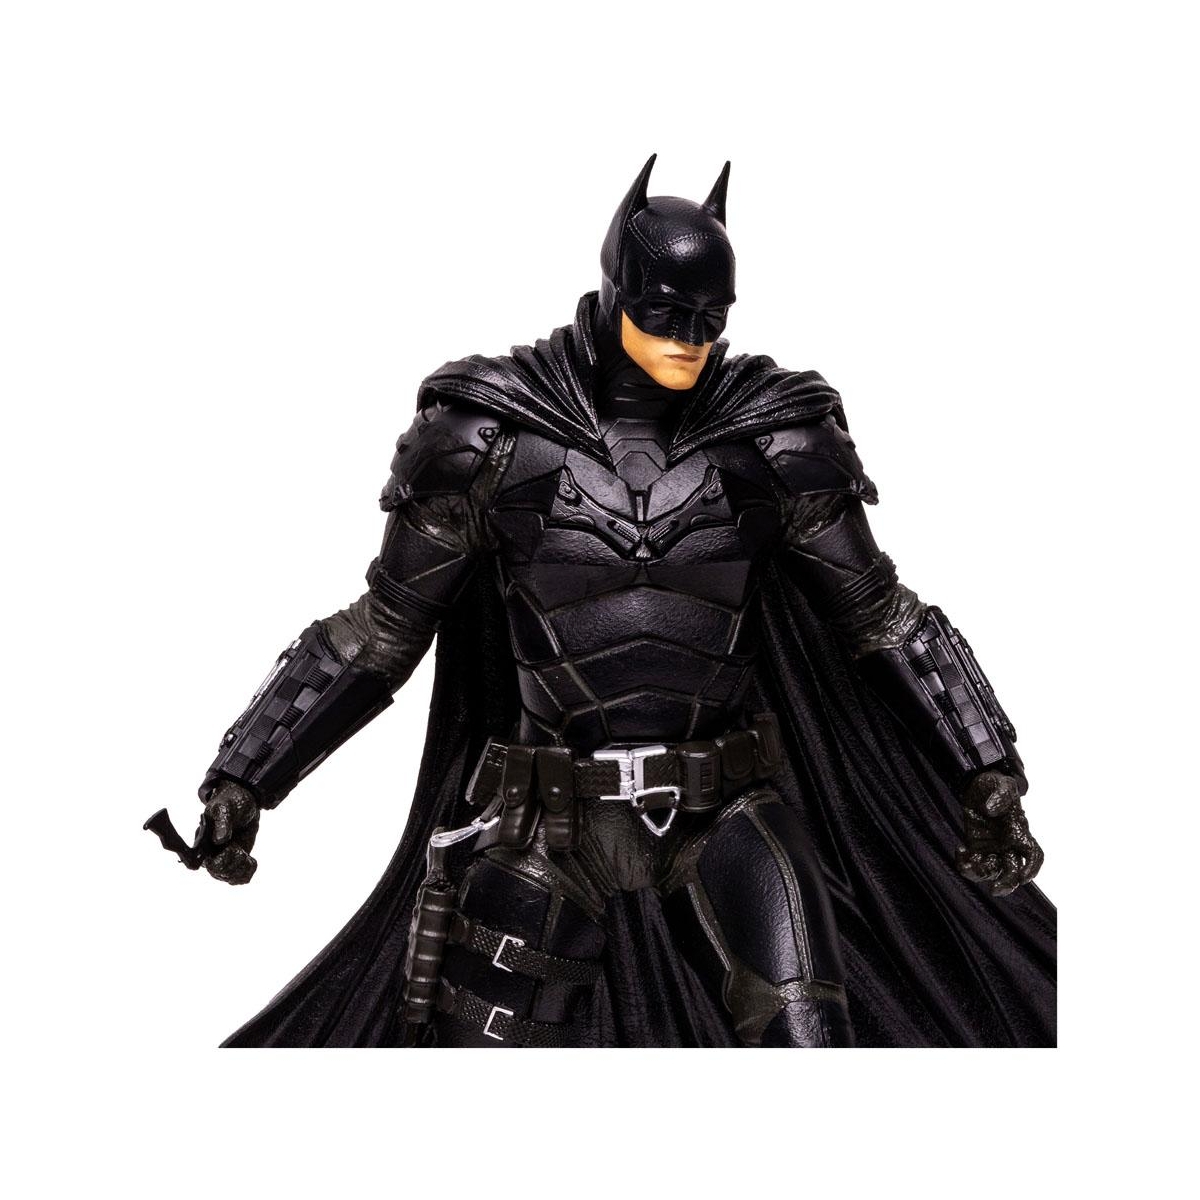 THE BATMAN LE FILM - FIGURINE 30 CM BATMAN - DC COMICS - Figurine Batman  Articulée 30 Cm Avec Sculpture Détaillée Du Film - 6061620 - Jouet Enfant 3